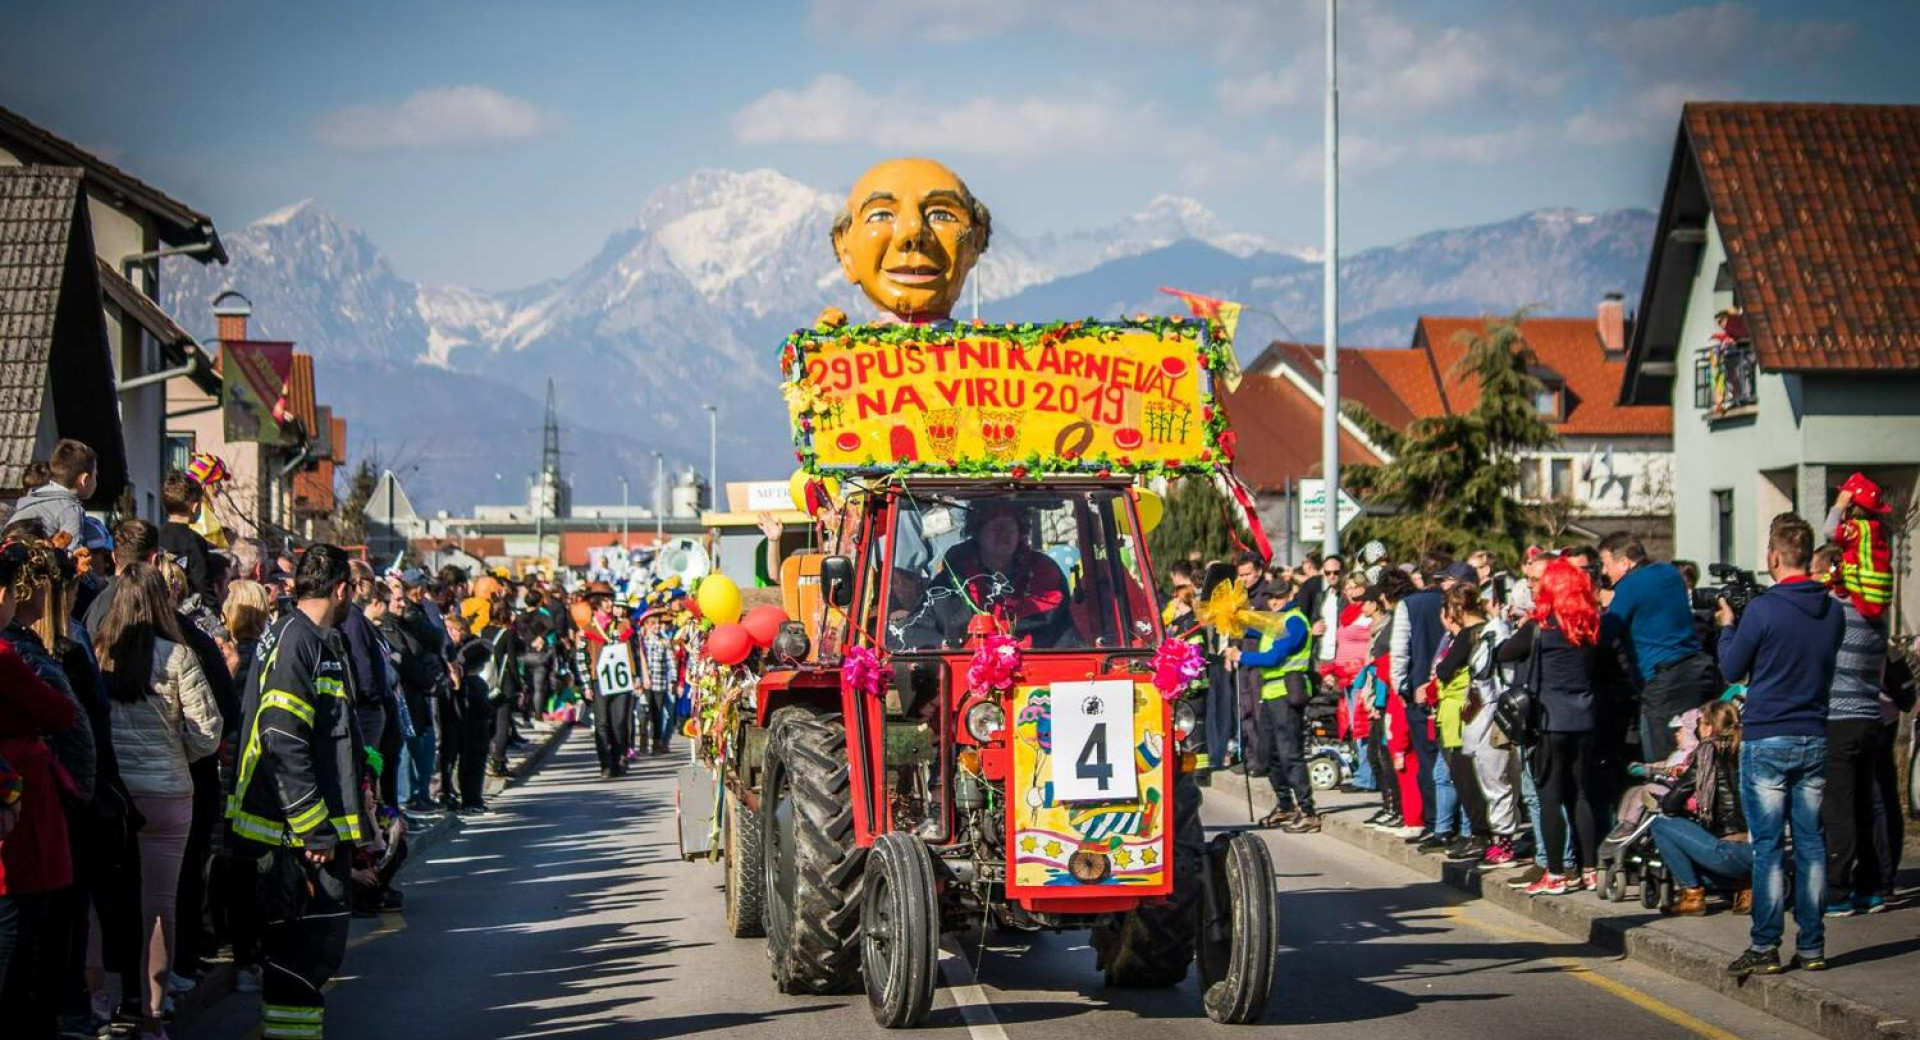 Pustni karneval na Viru; na fotografiji maske na traktorju, za njimi sprevod, ob strani občinstvo